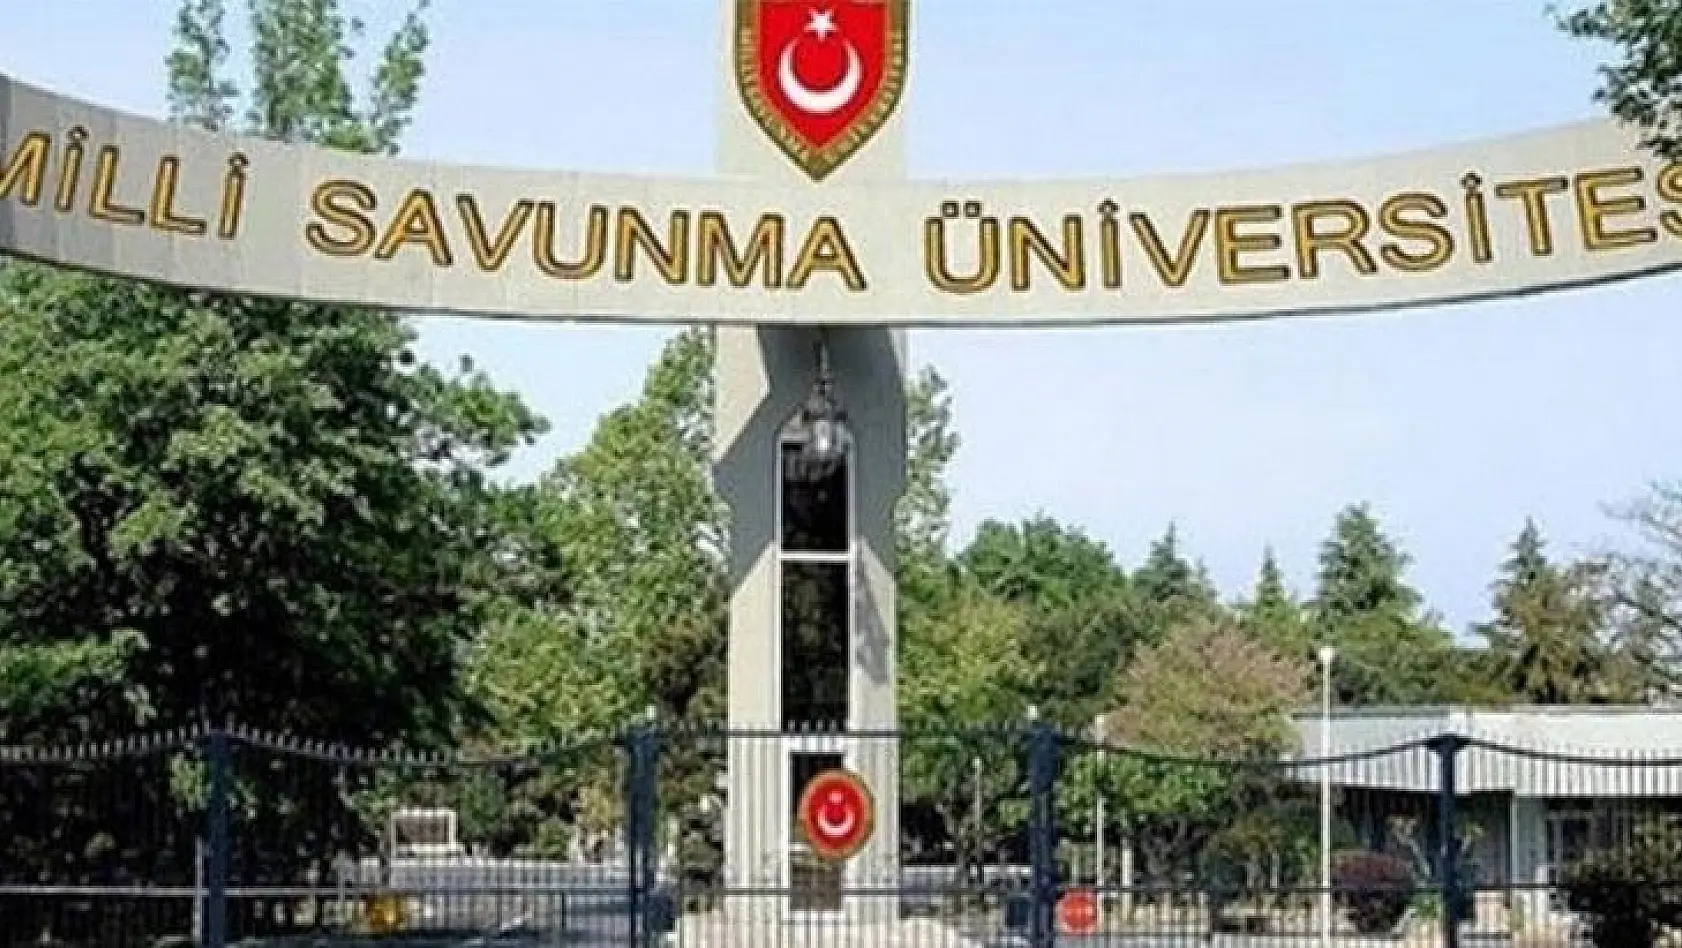 Milli Savunma Üniversitesi 200 Sözleşmeli Personel alacak